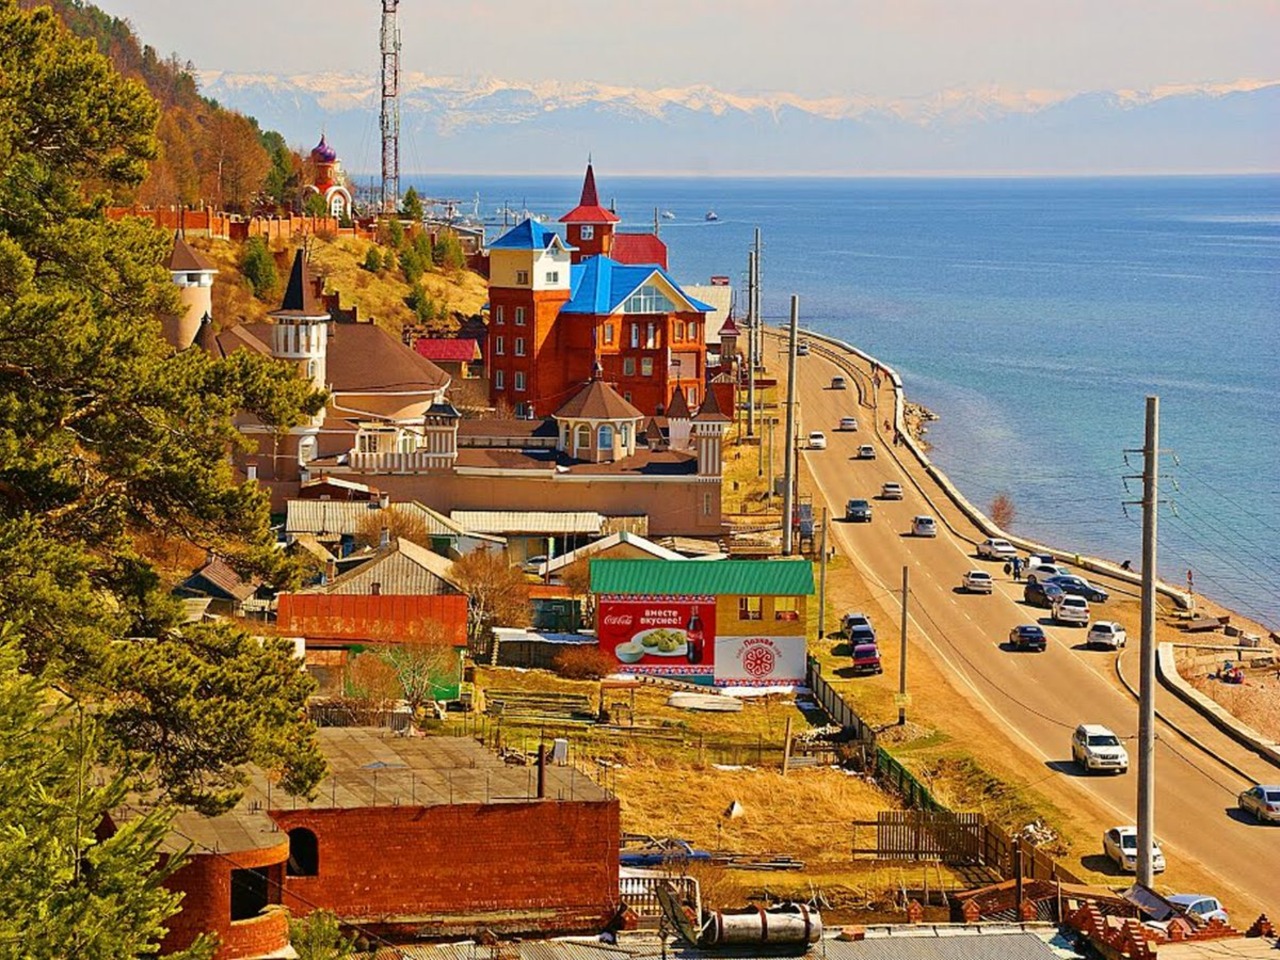 Листвянка: славный день на Байкале  | Цена 12500₽, отзывы, описание экскурсии